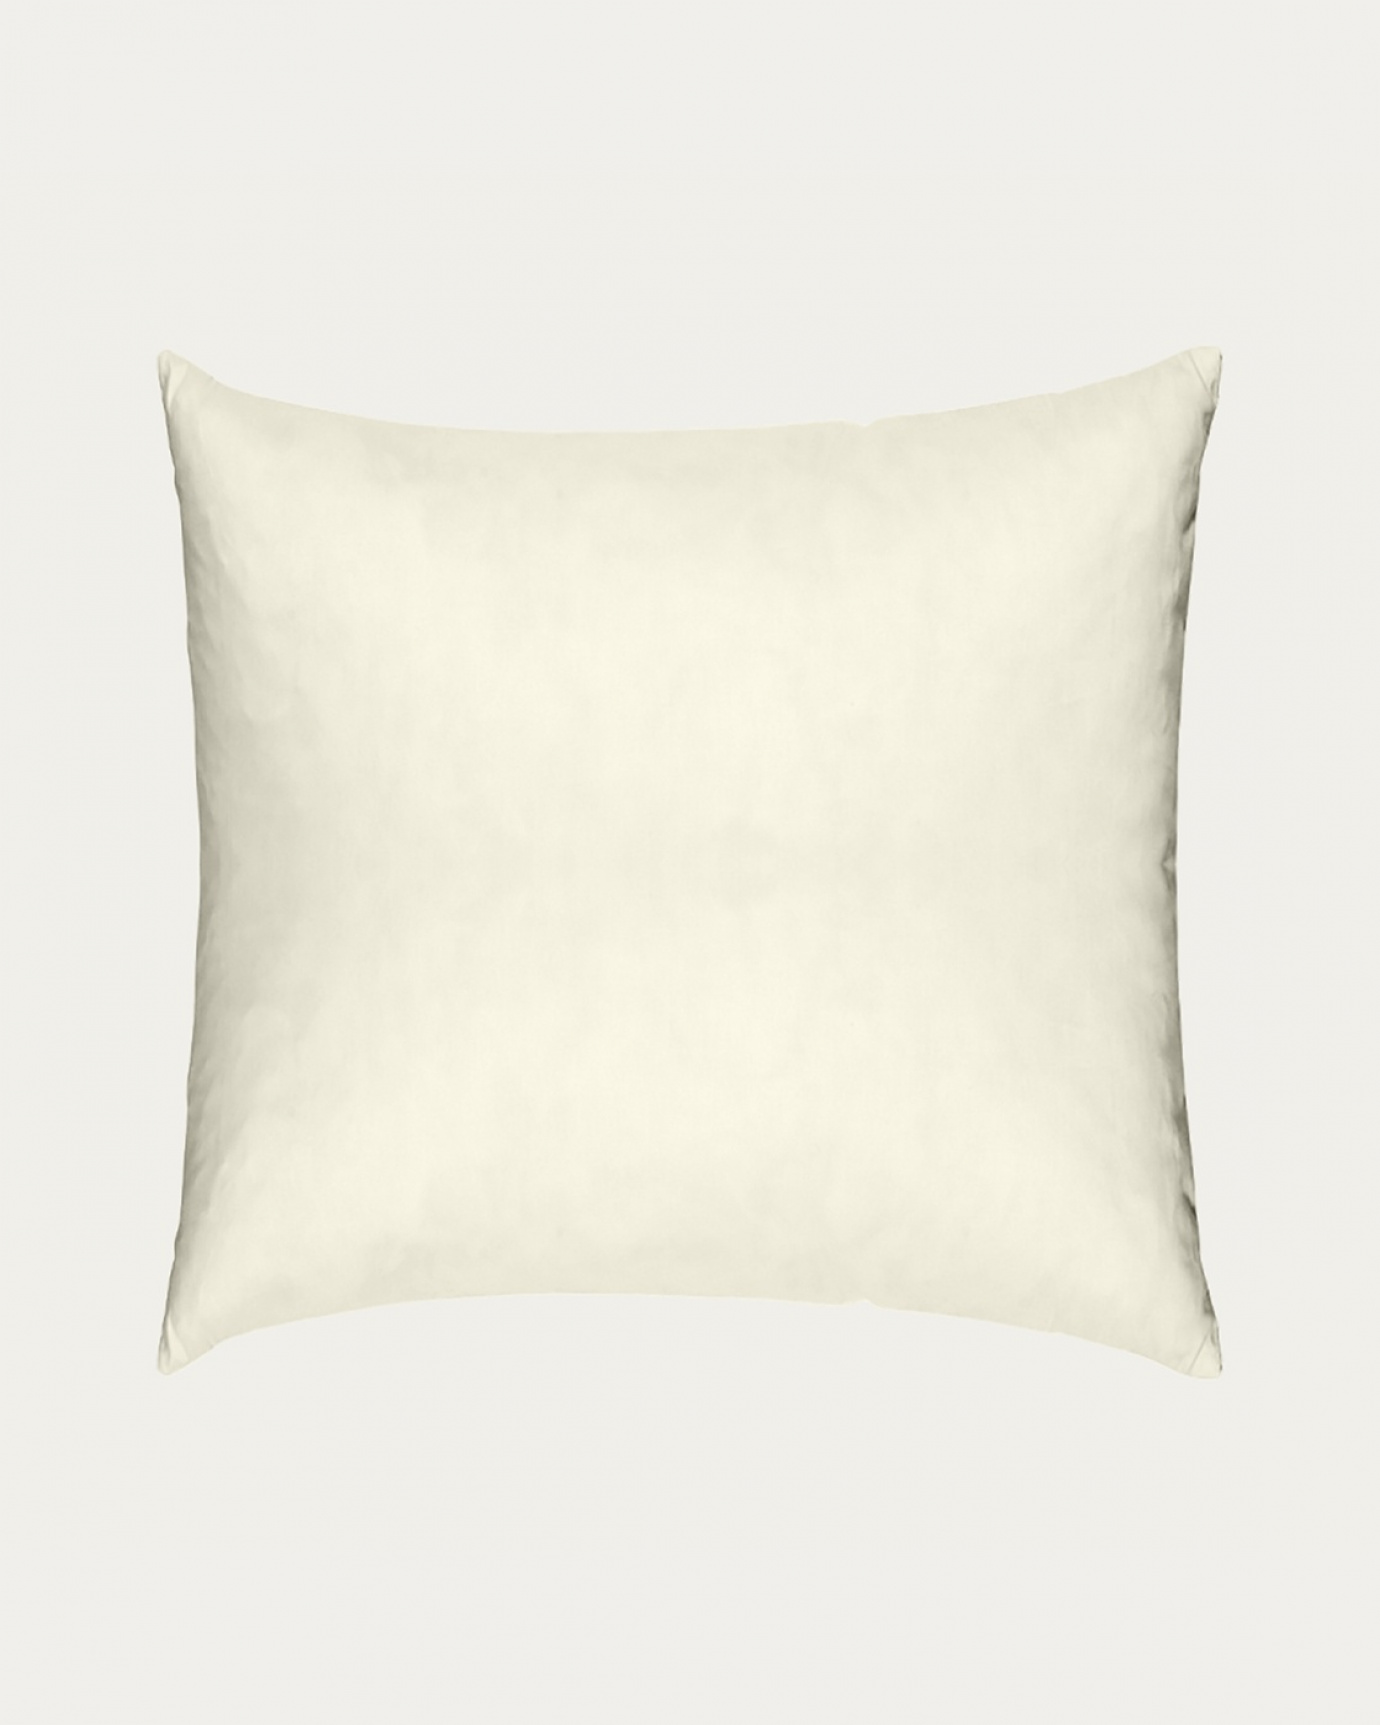 Immagine prodotto beige cotone FEATHER cuscini interni in cotone con imbottitura in piuma di LINUM DESIGN. Dimensioni 50x50 cm.